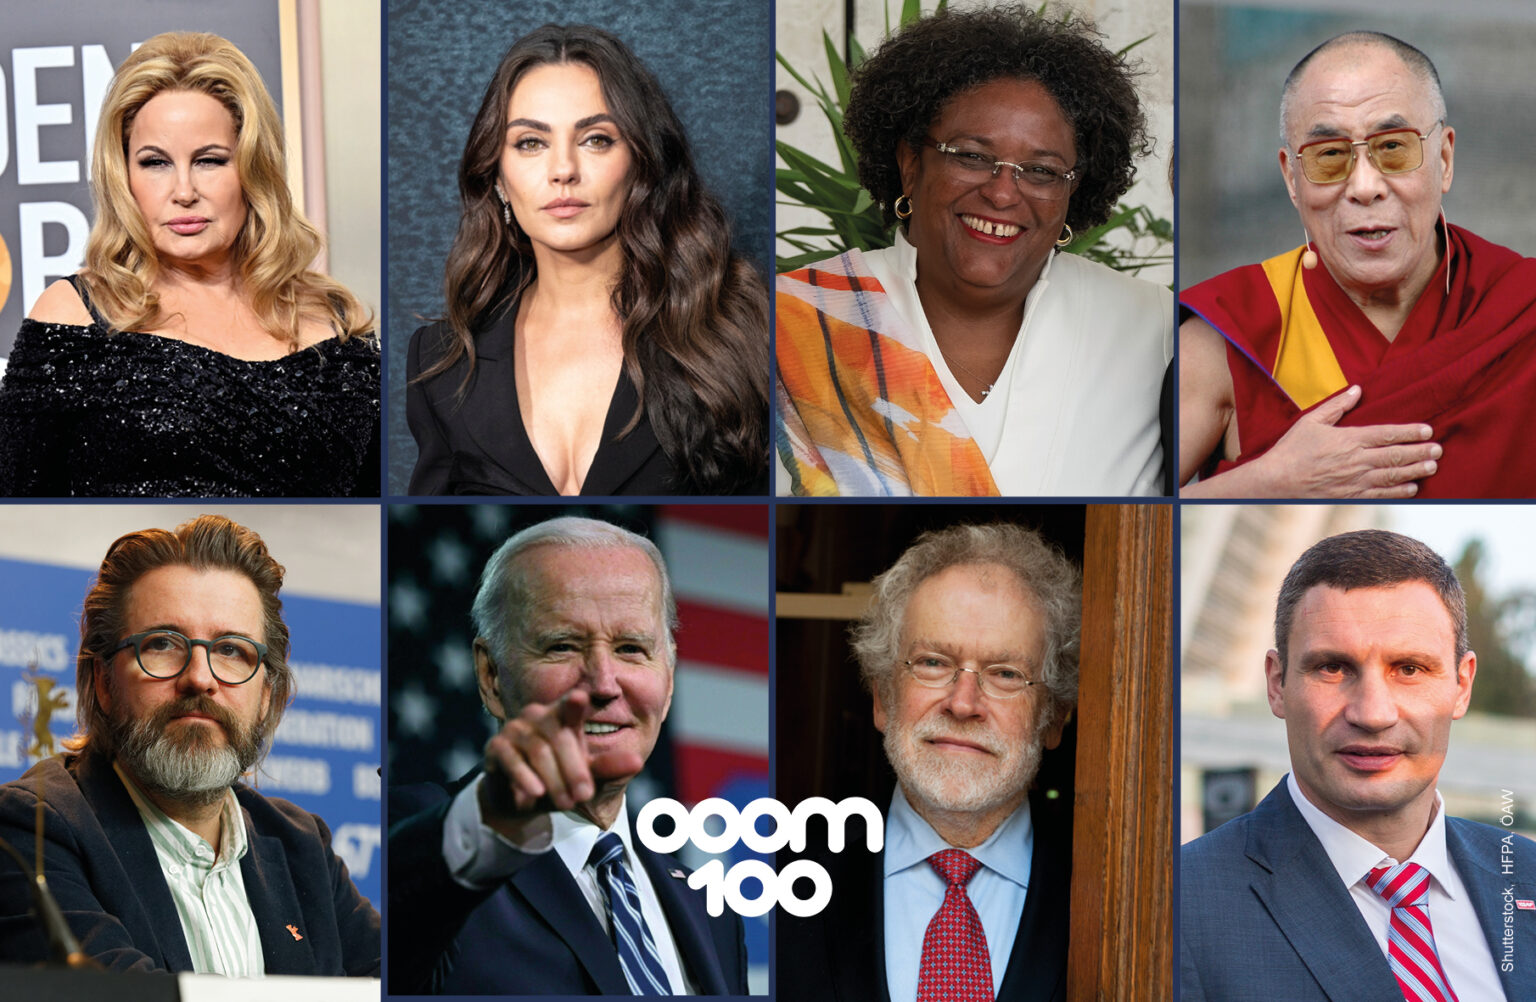 OOOM 100: Die inspirierendsten Menschen der Welt 2023